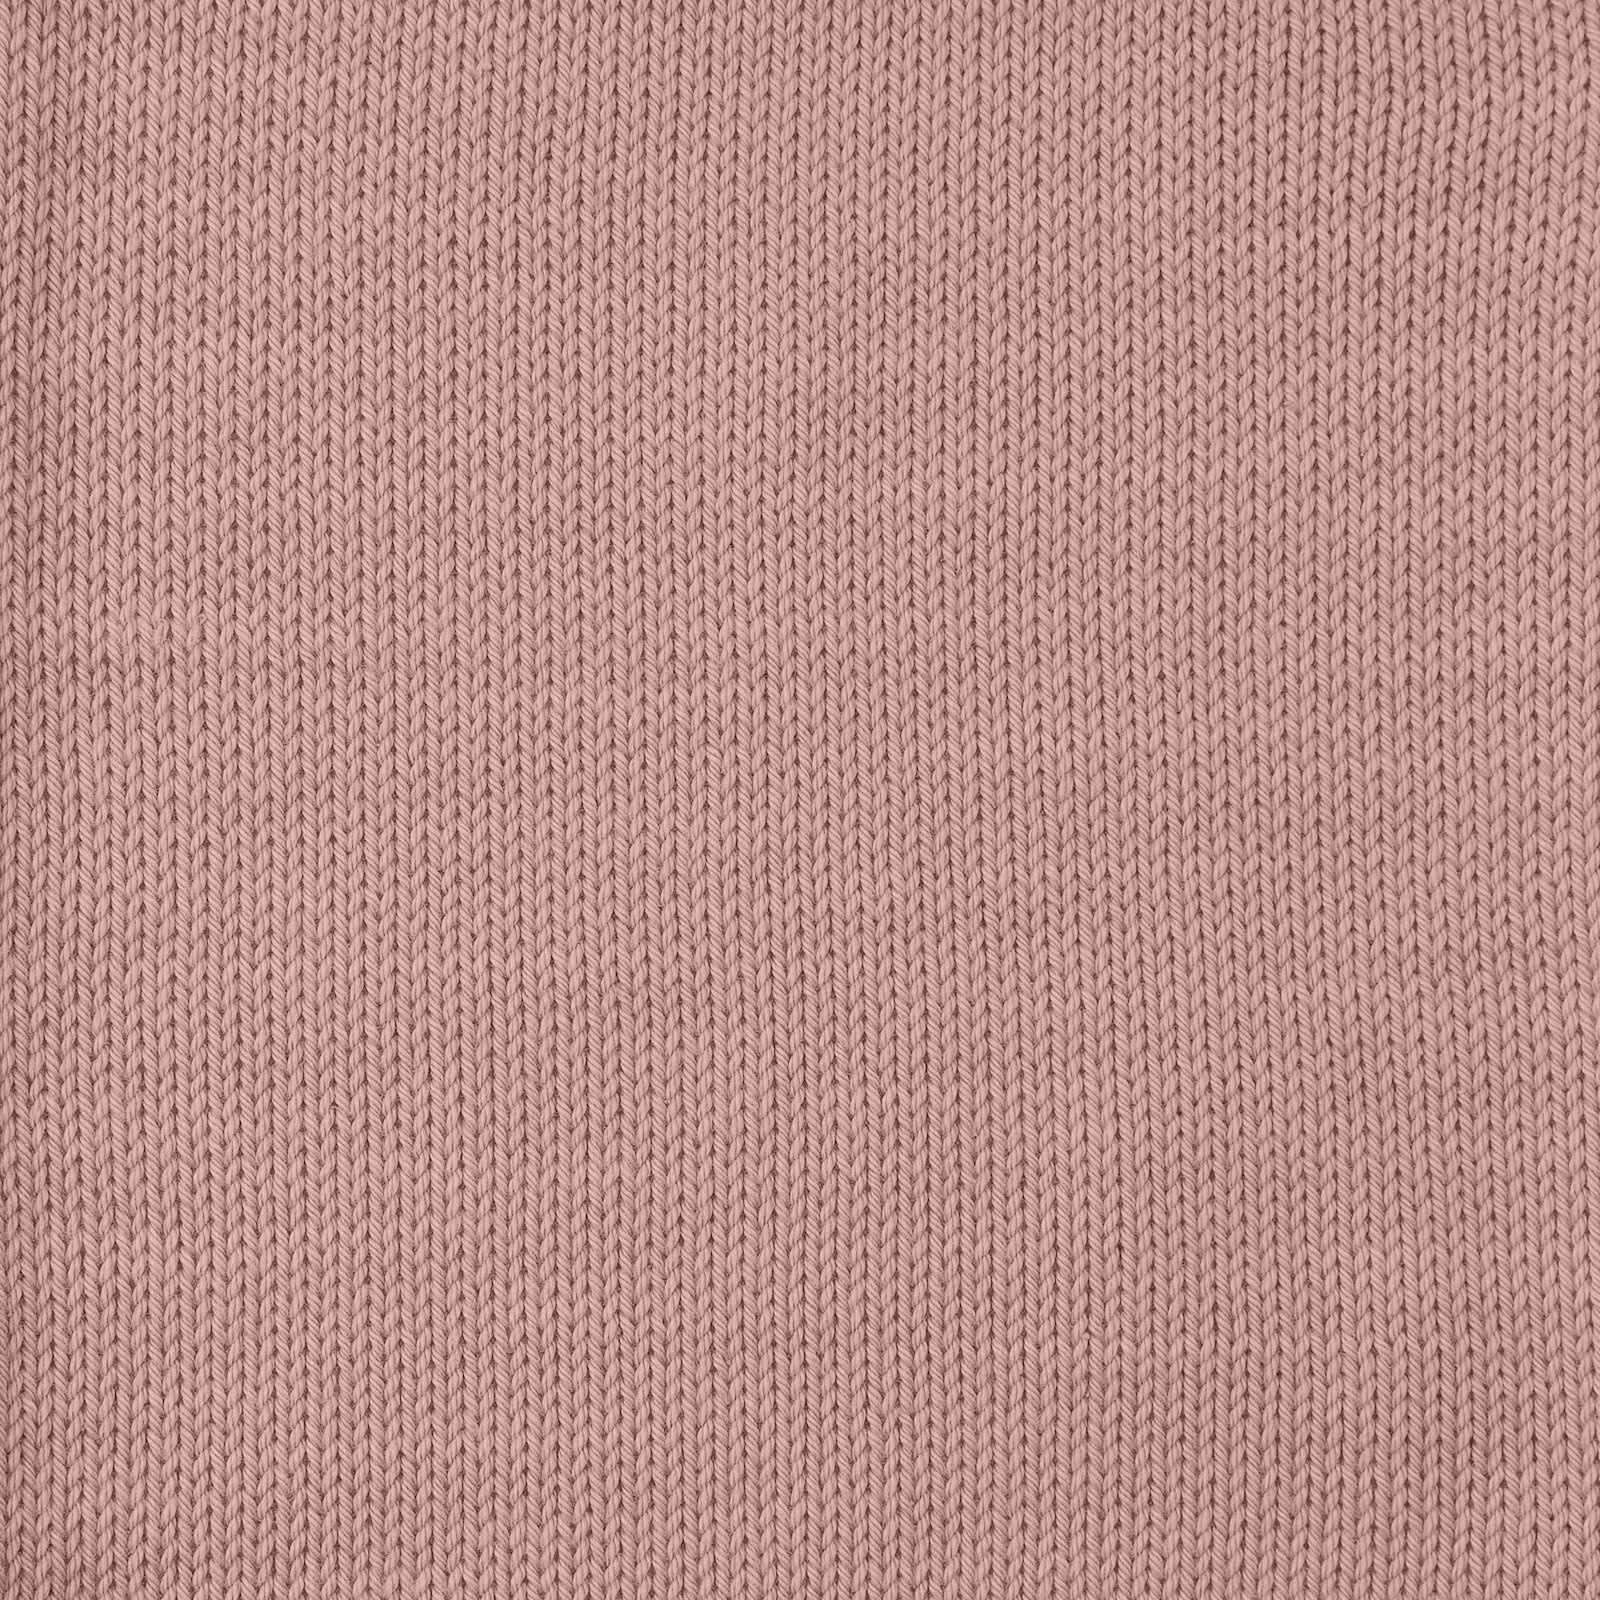 FRAYA, 100% cotton 8/4  yarn  "Colourful", old rose 90060008_sskit